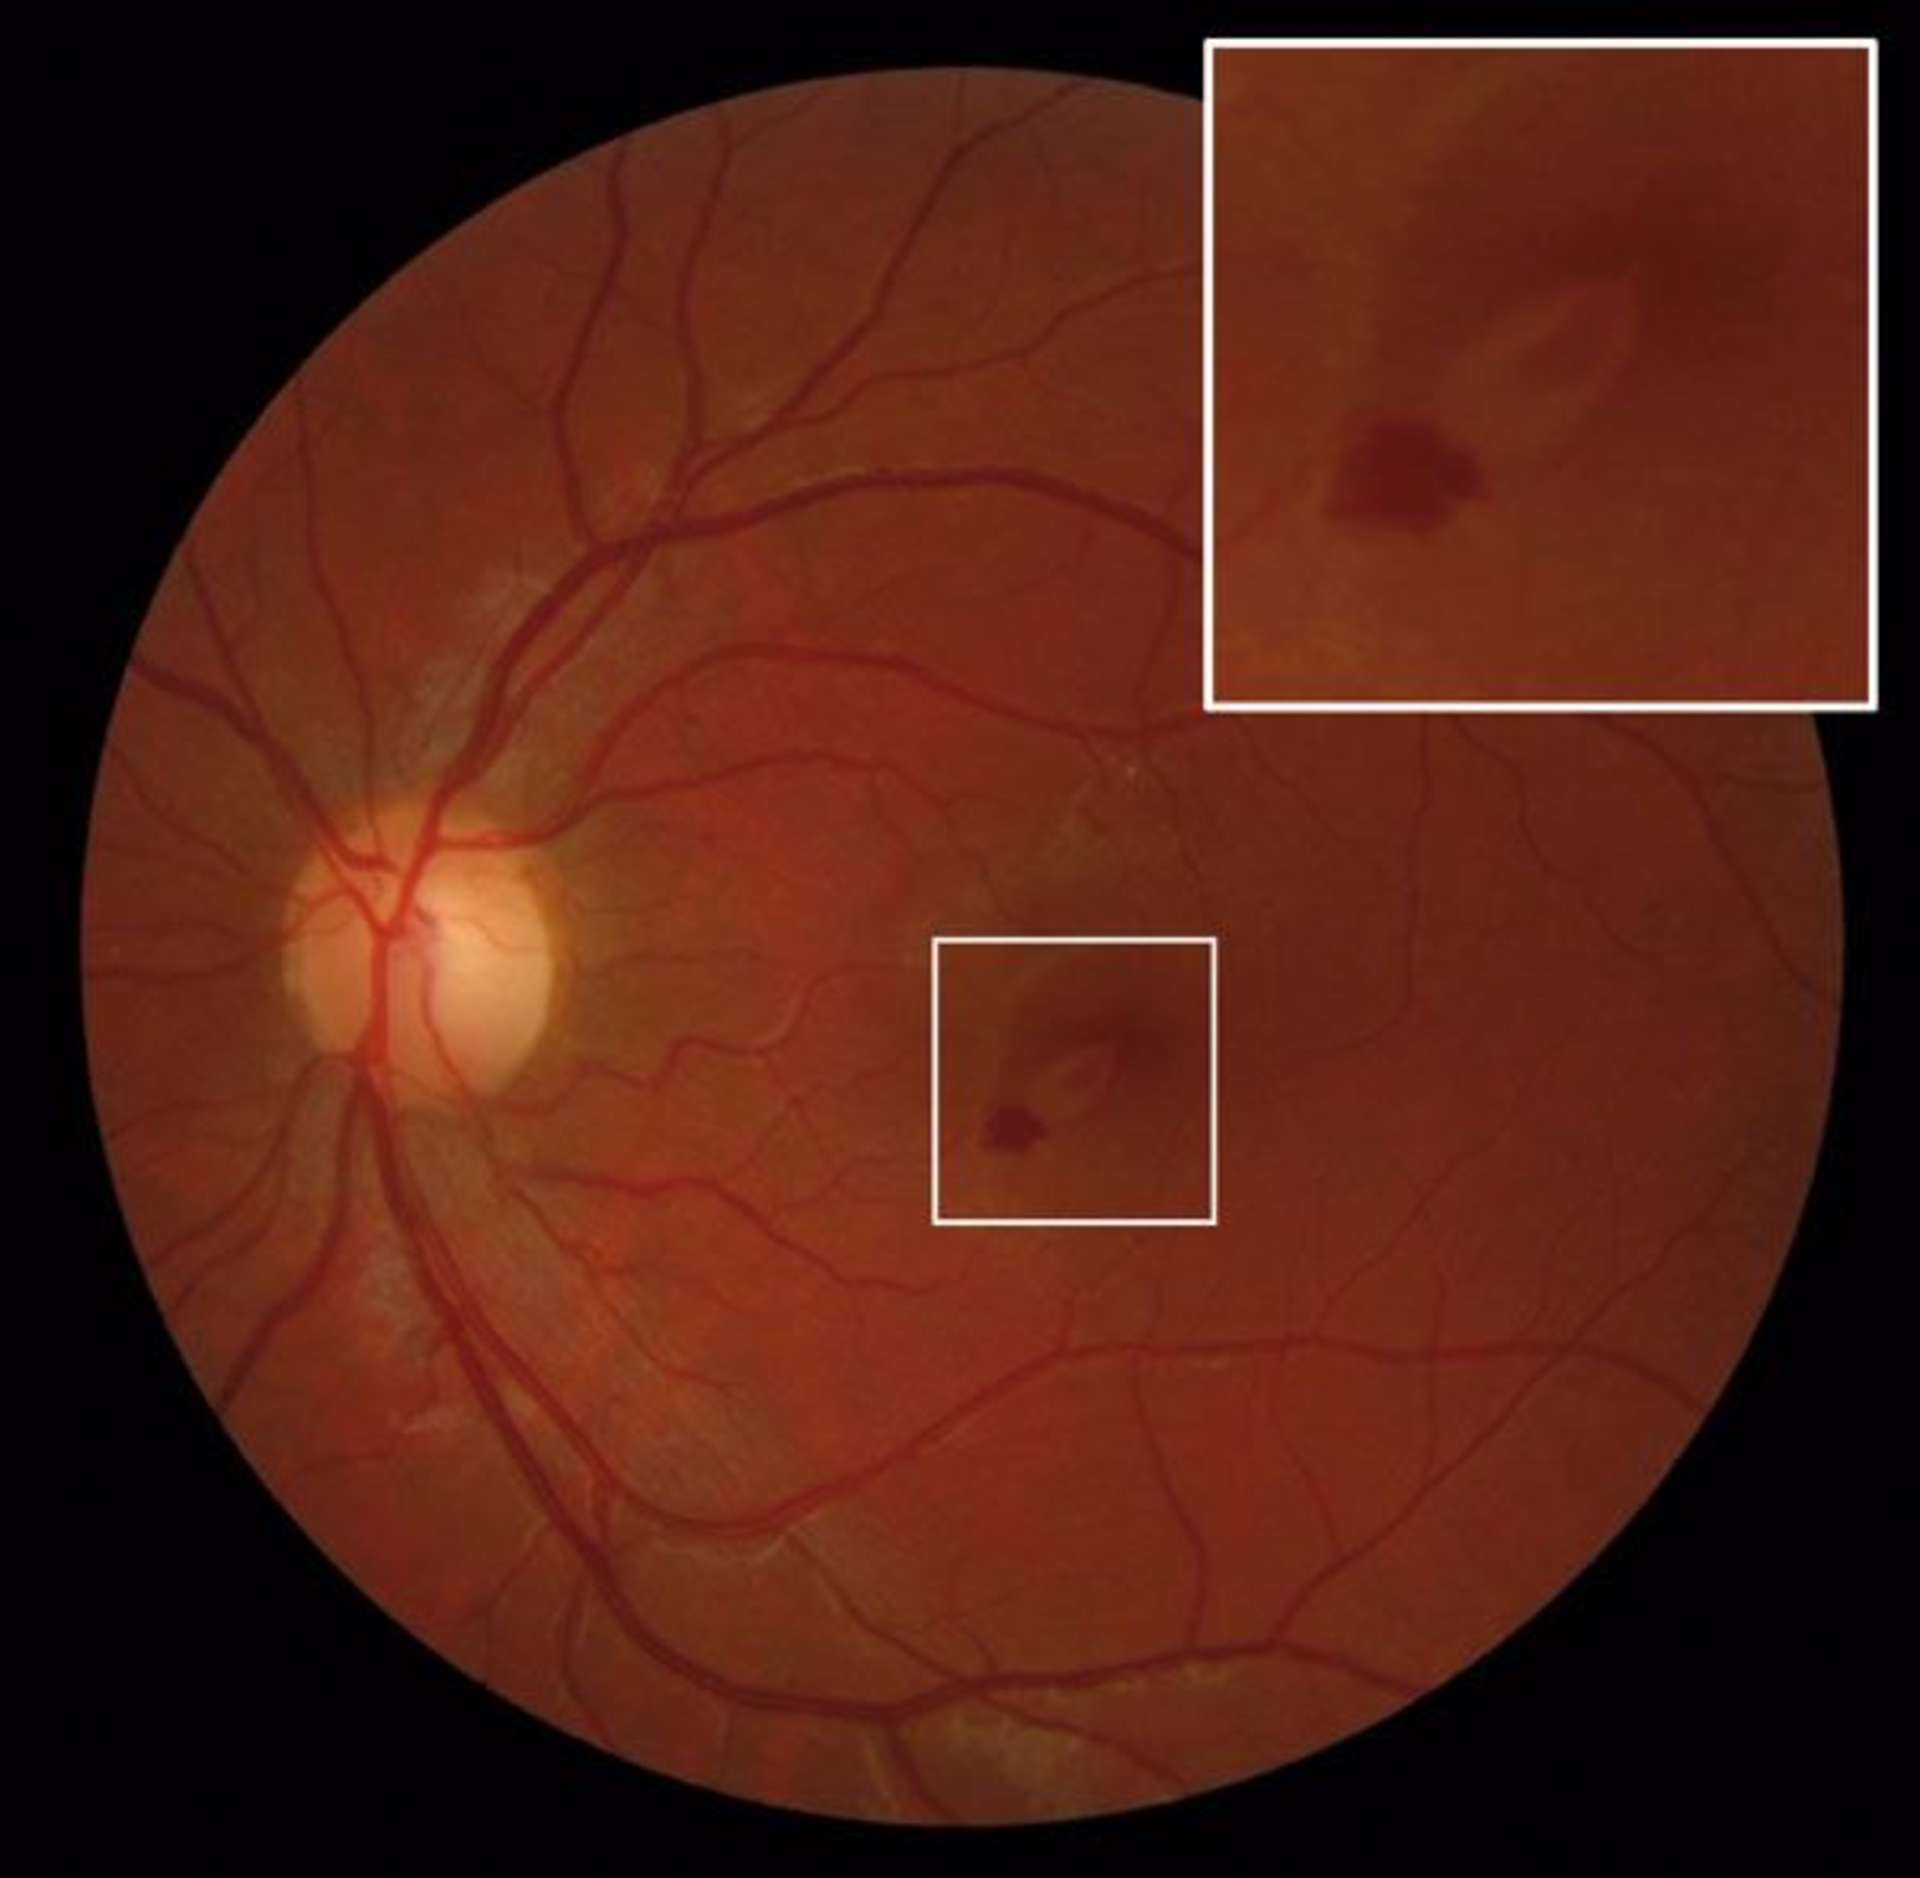 Figure 1. Rétinophotographie initiale de l’œil gauche montrant une lésion jauneorangé arrondie périfovéolaire inférieure et une hémorragie prérétinienne périlésionnelle
